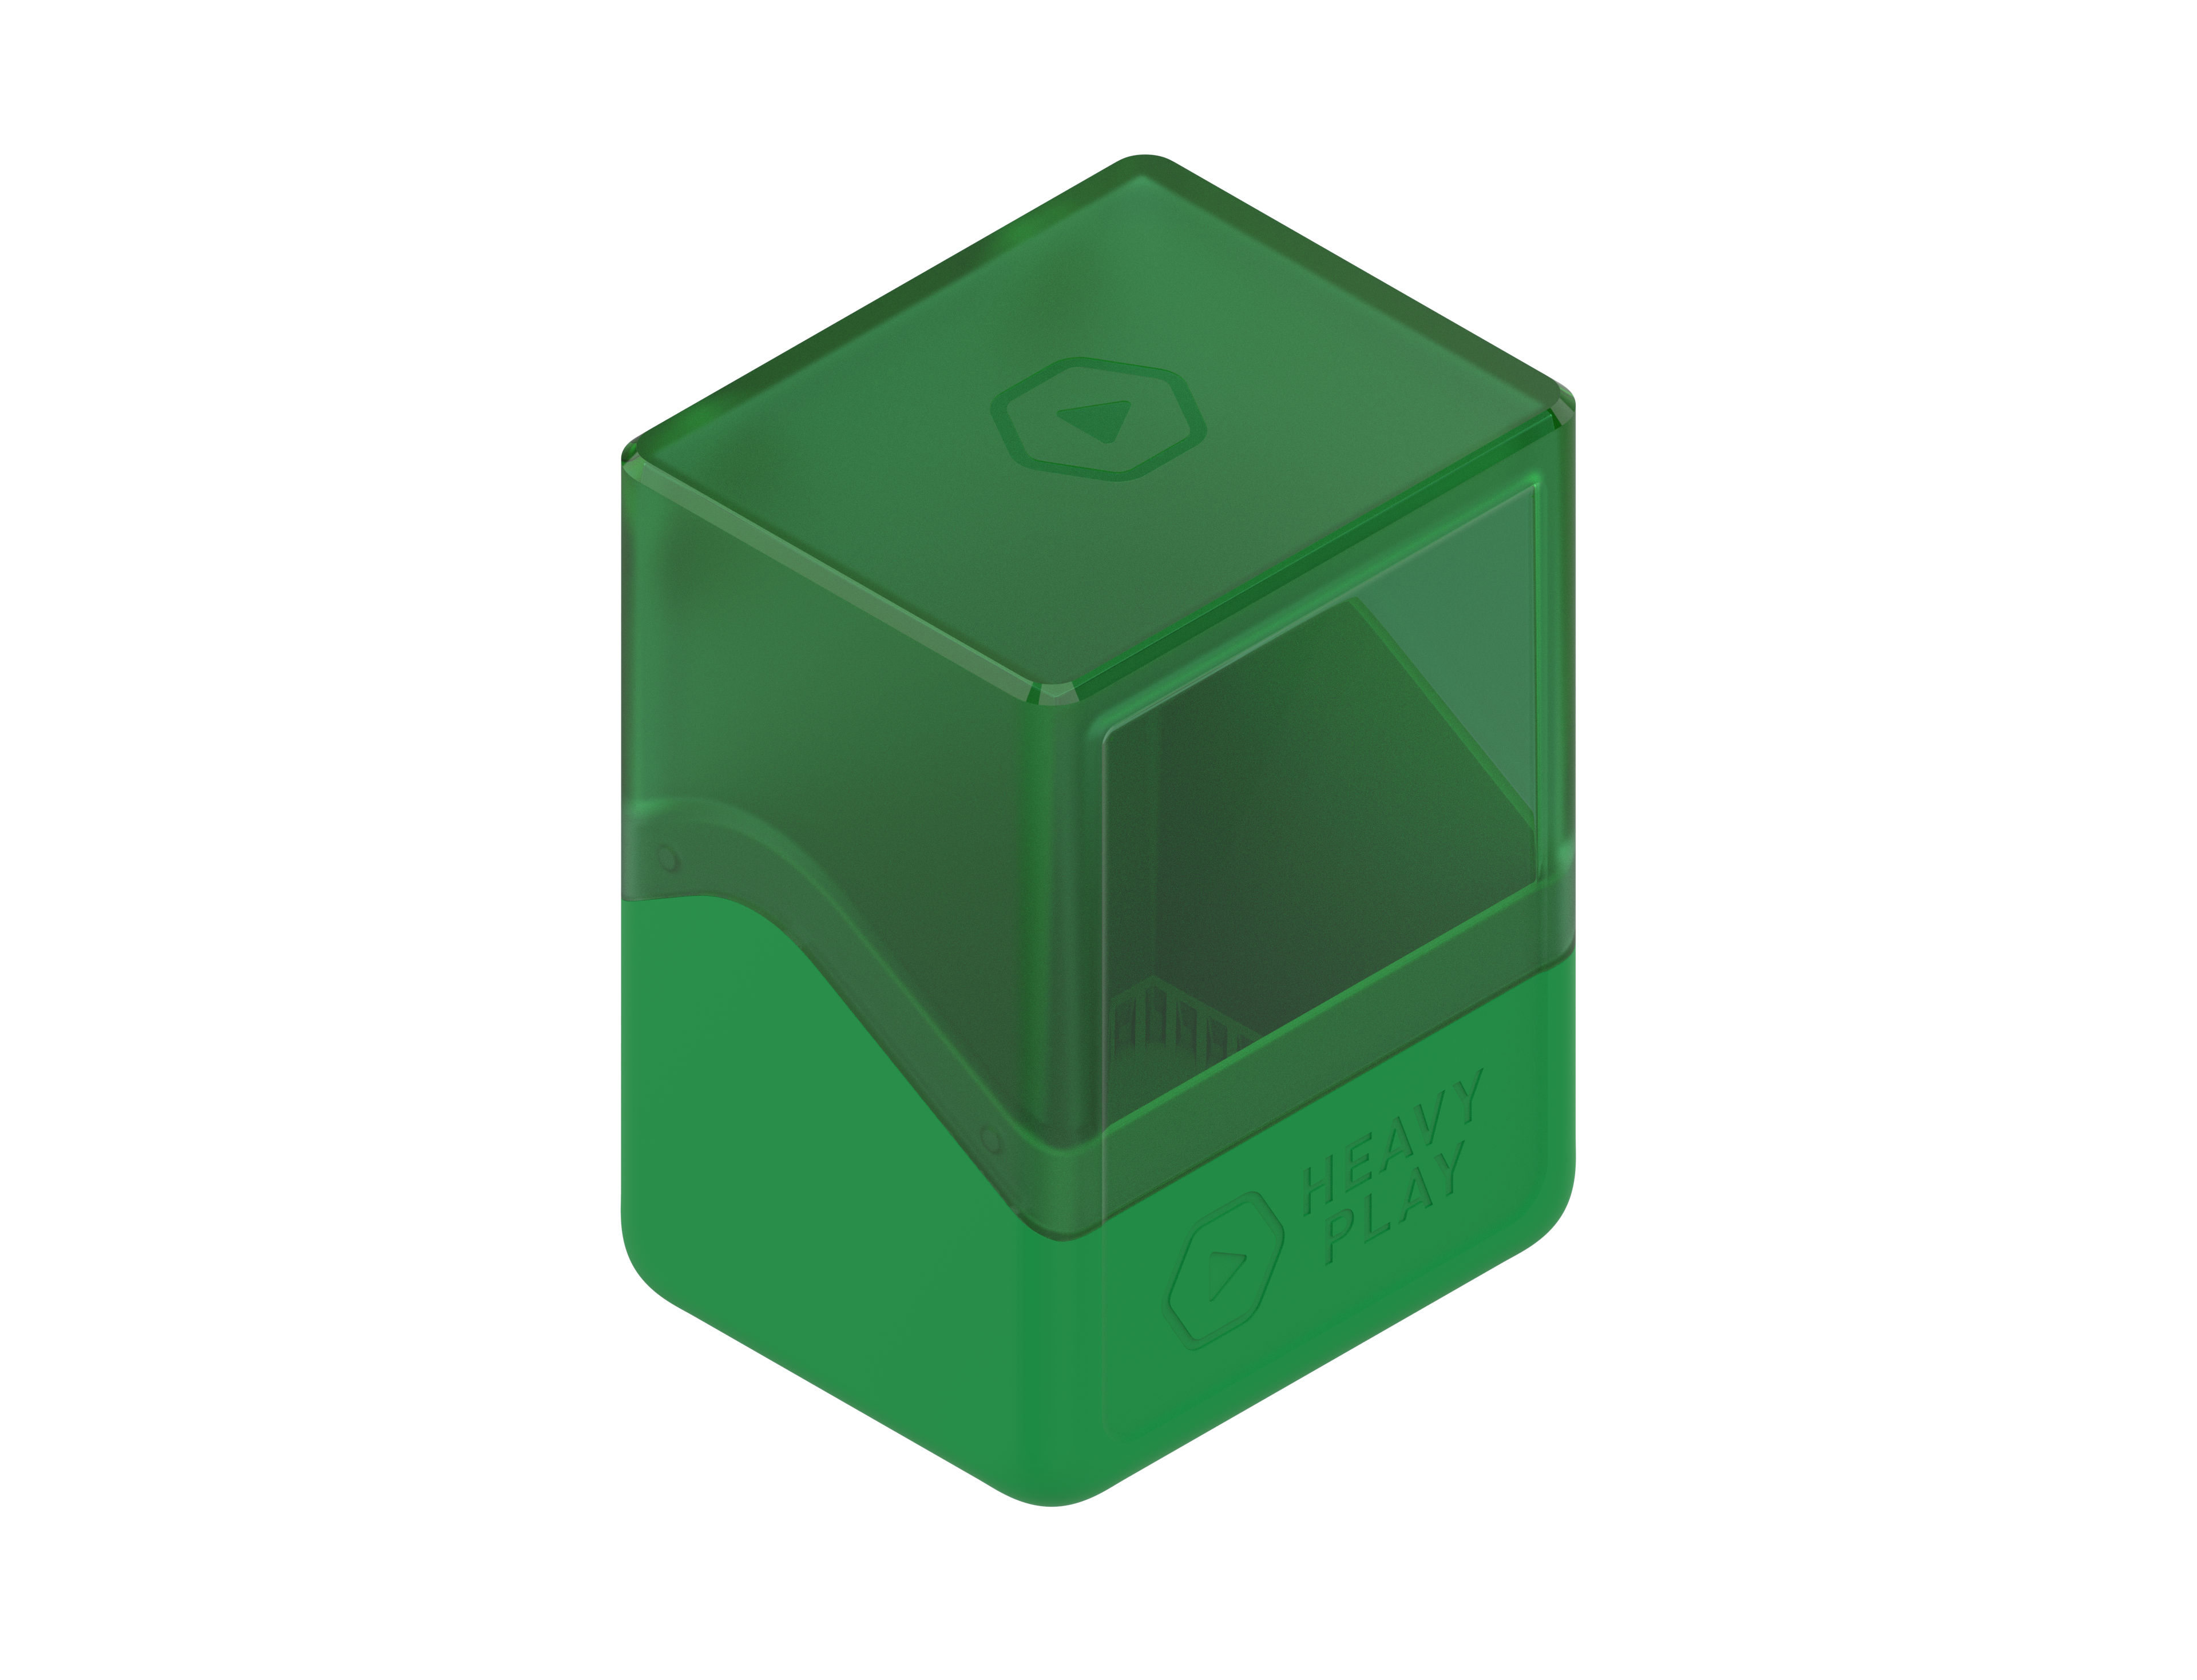 RFG DECKBOX - DRUID GREEN